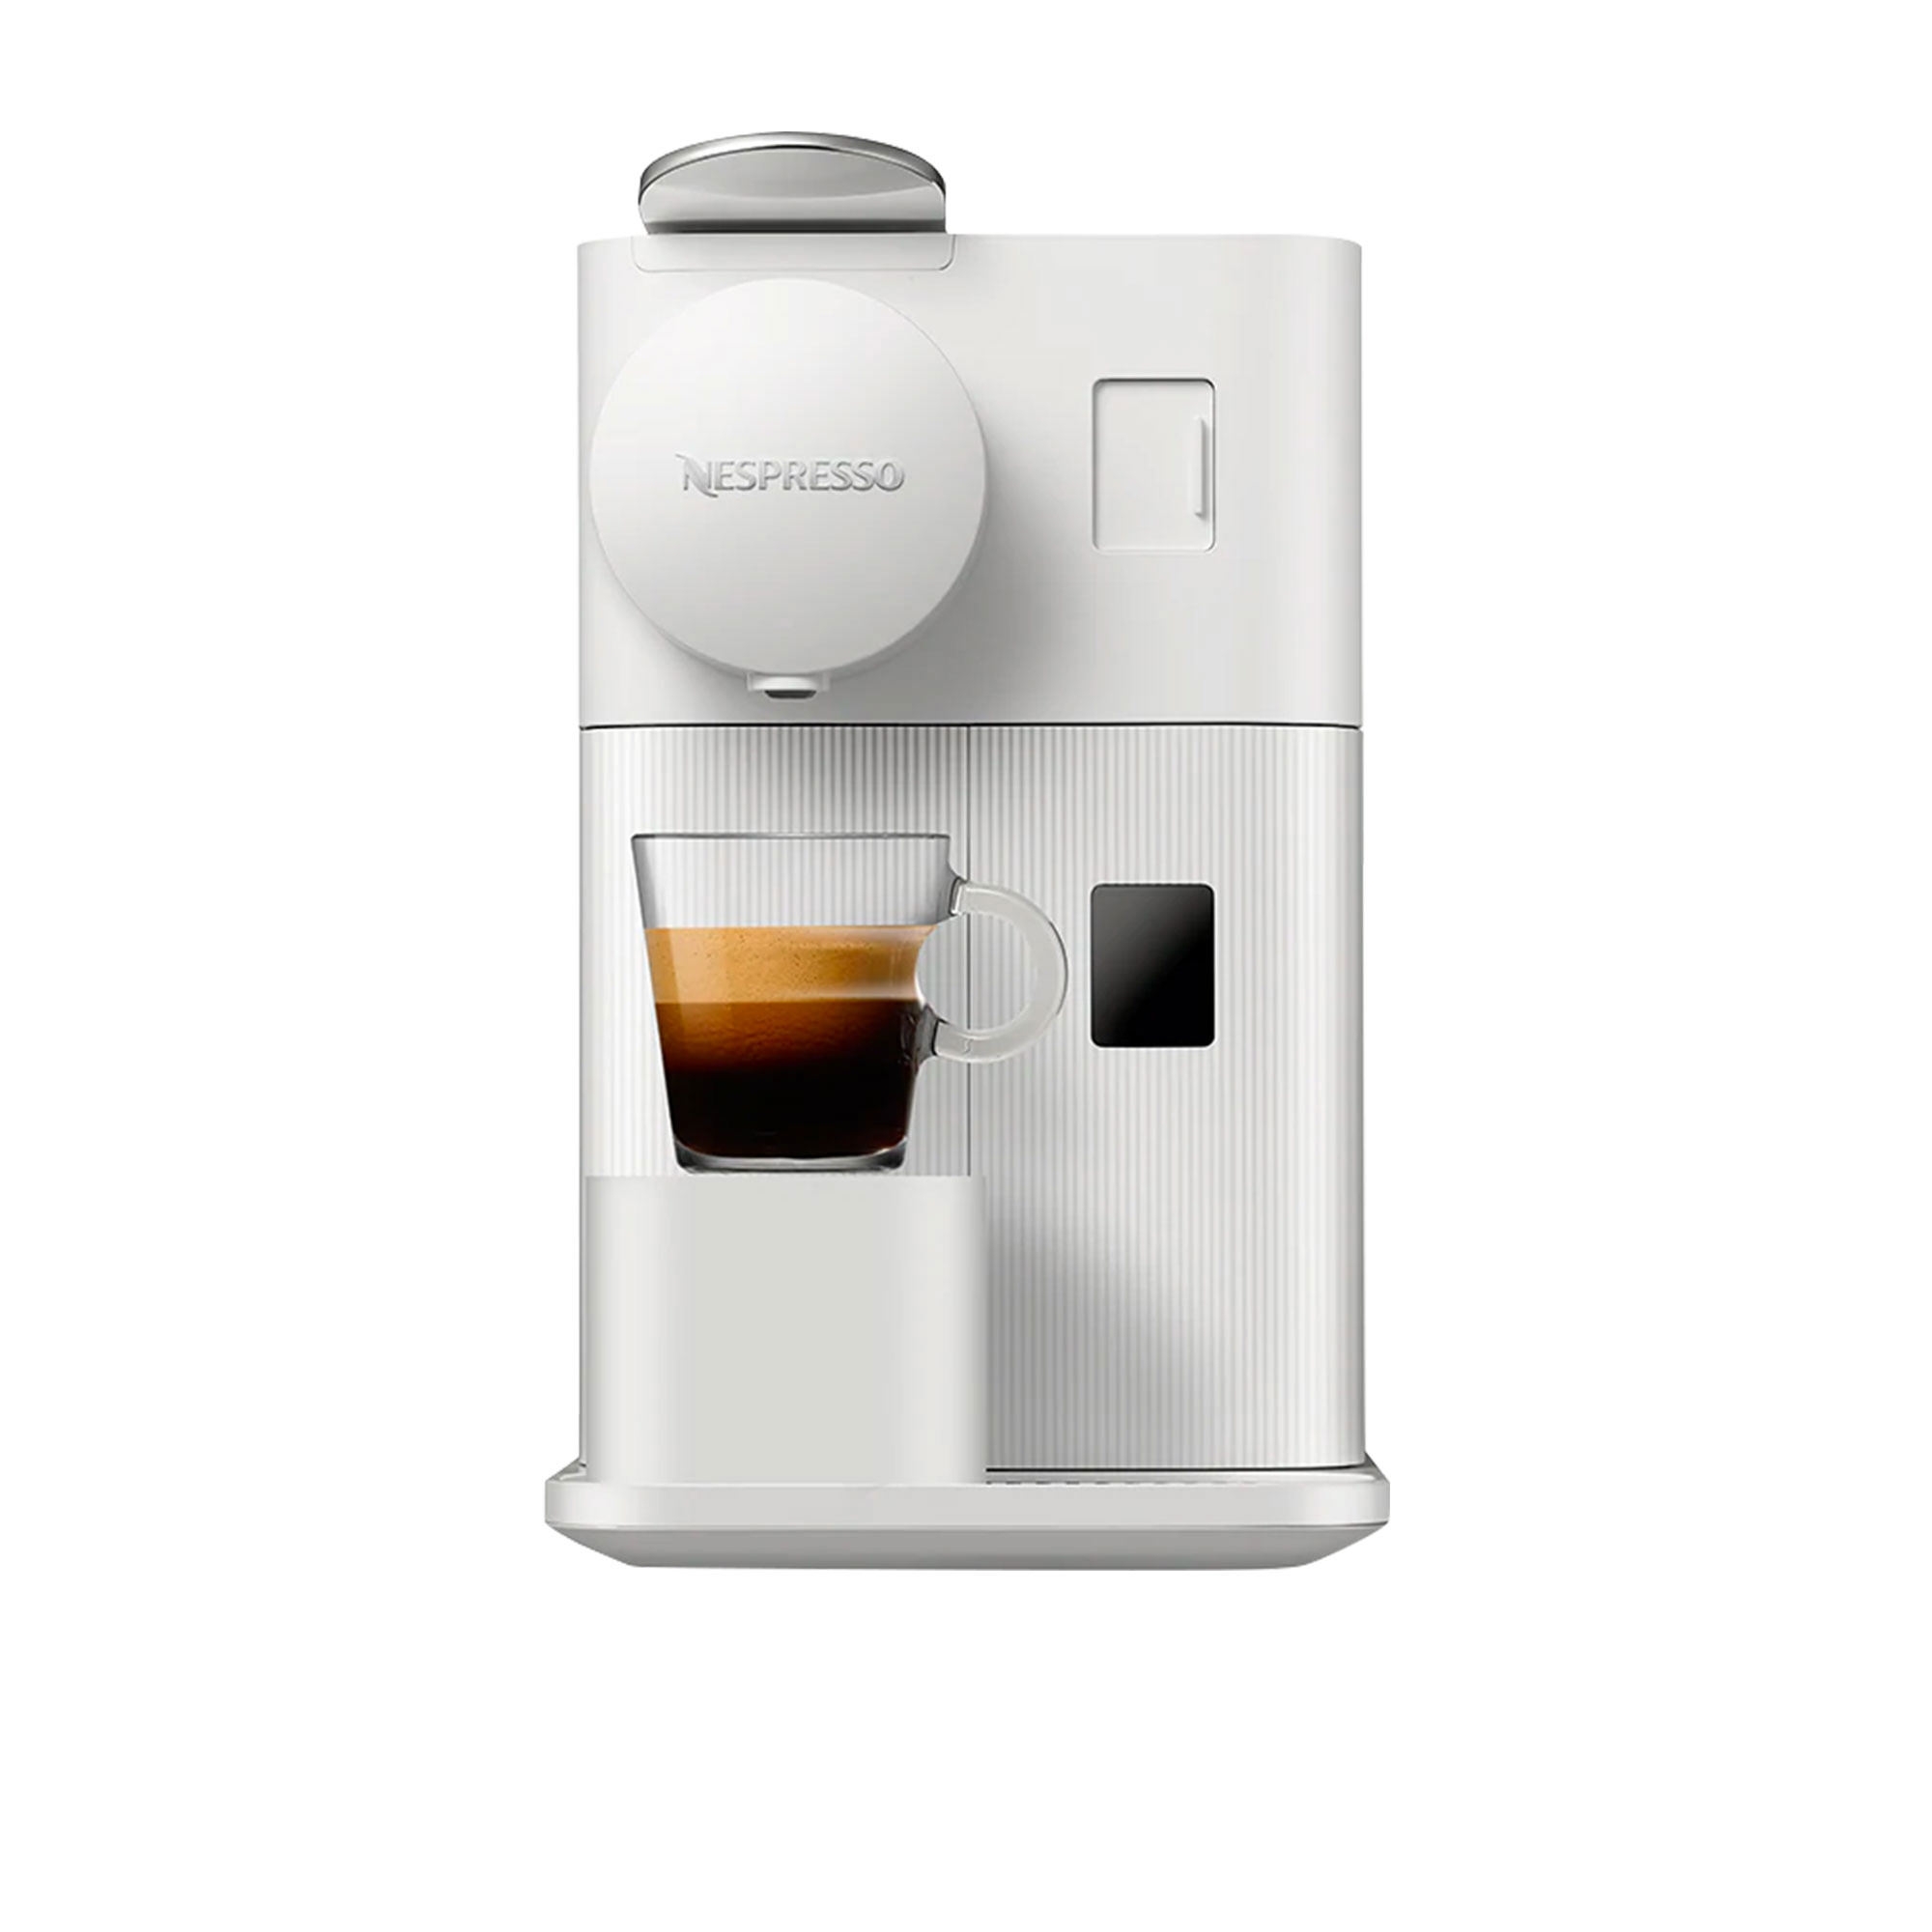 DeLonghi Nespresso Lattissima One EN510W Coffee Machine White Image 2